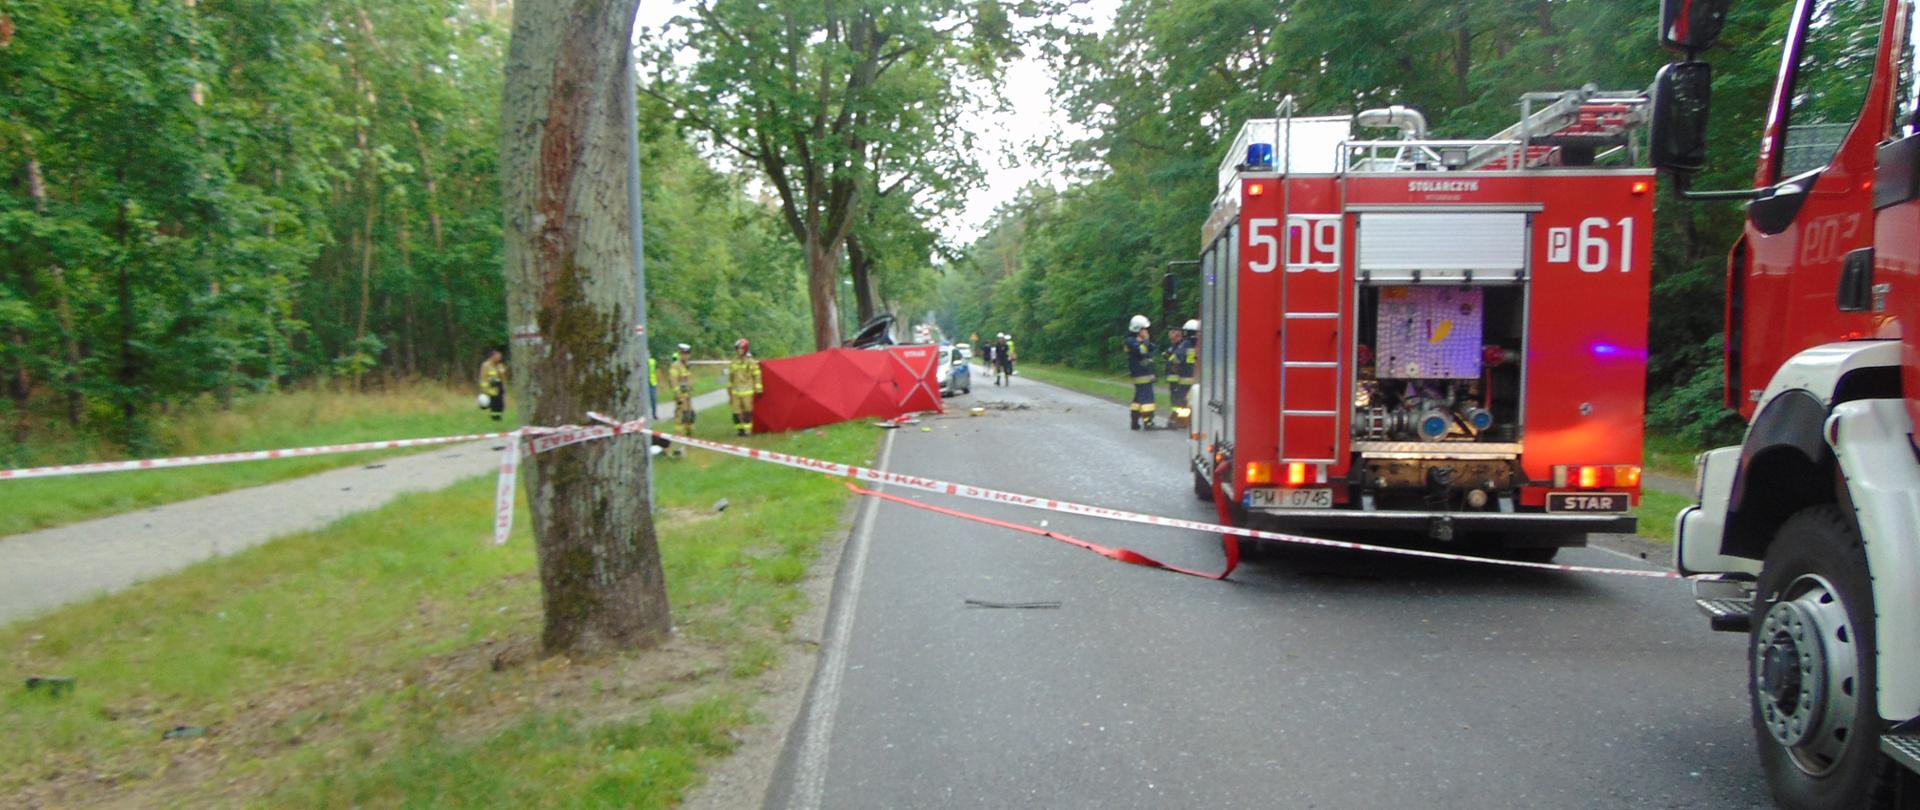 Na drodze stoi samochód straży pożarnej. W oddali widać parawan zasłaniający miejsce wypadku.